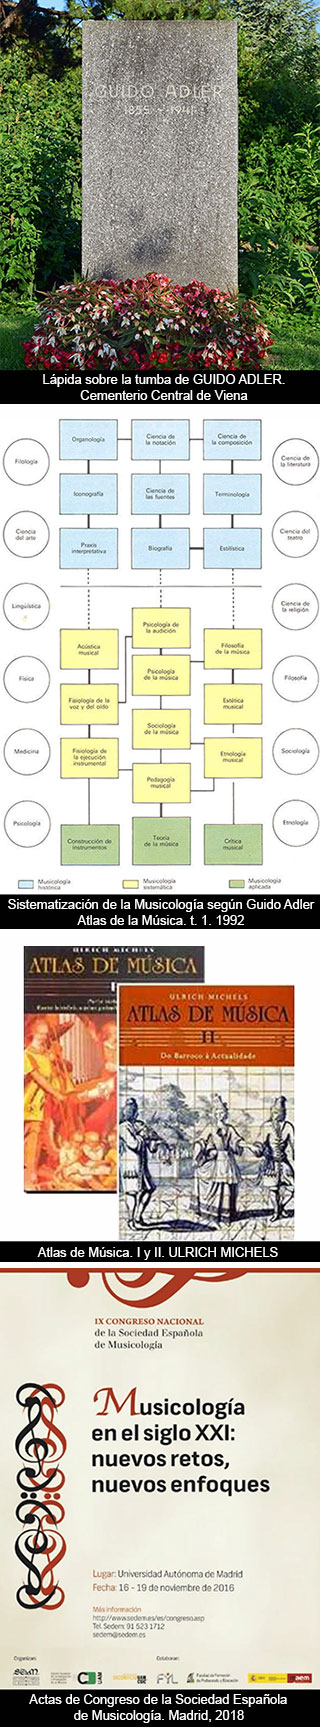 La Musicología: sistematización que lleva a la pluridisciplinariedad  